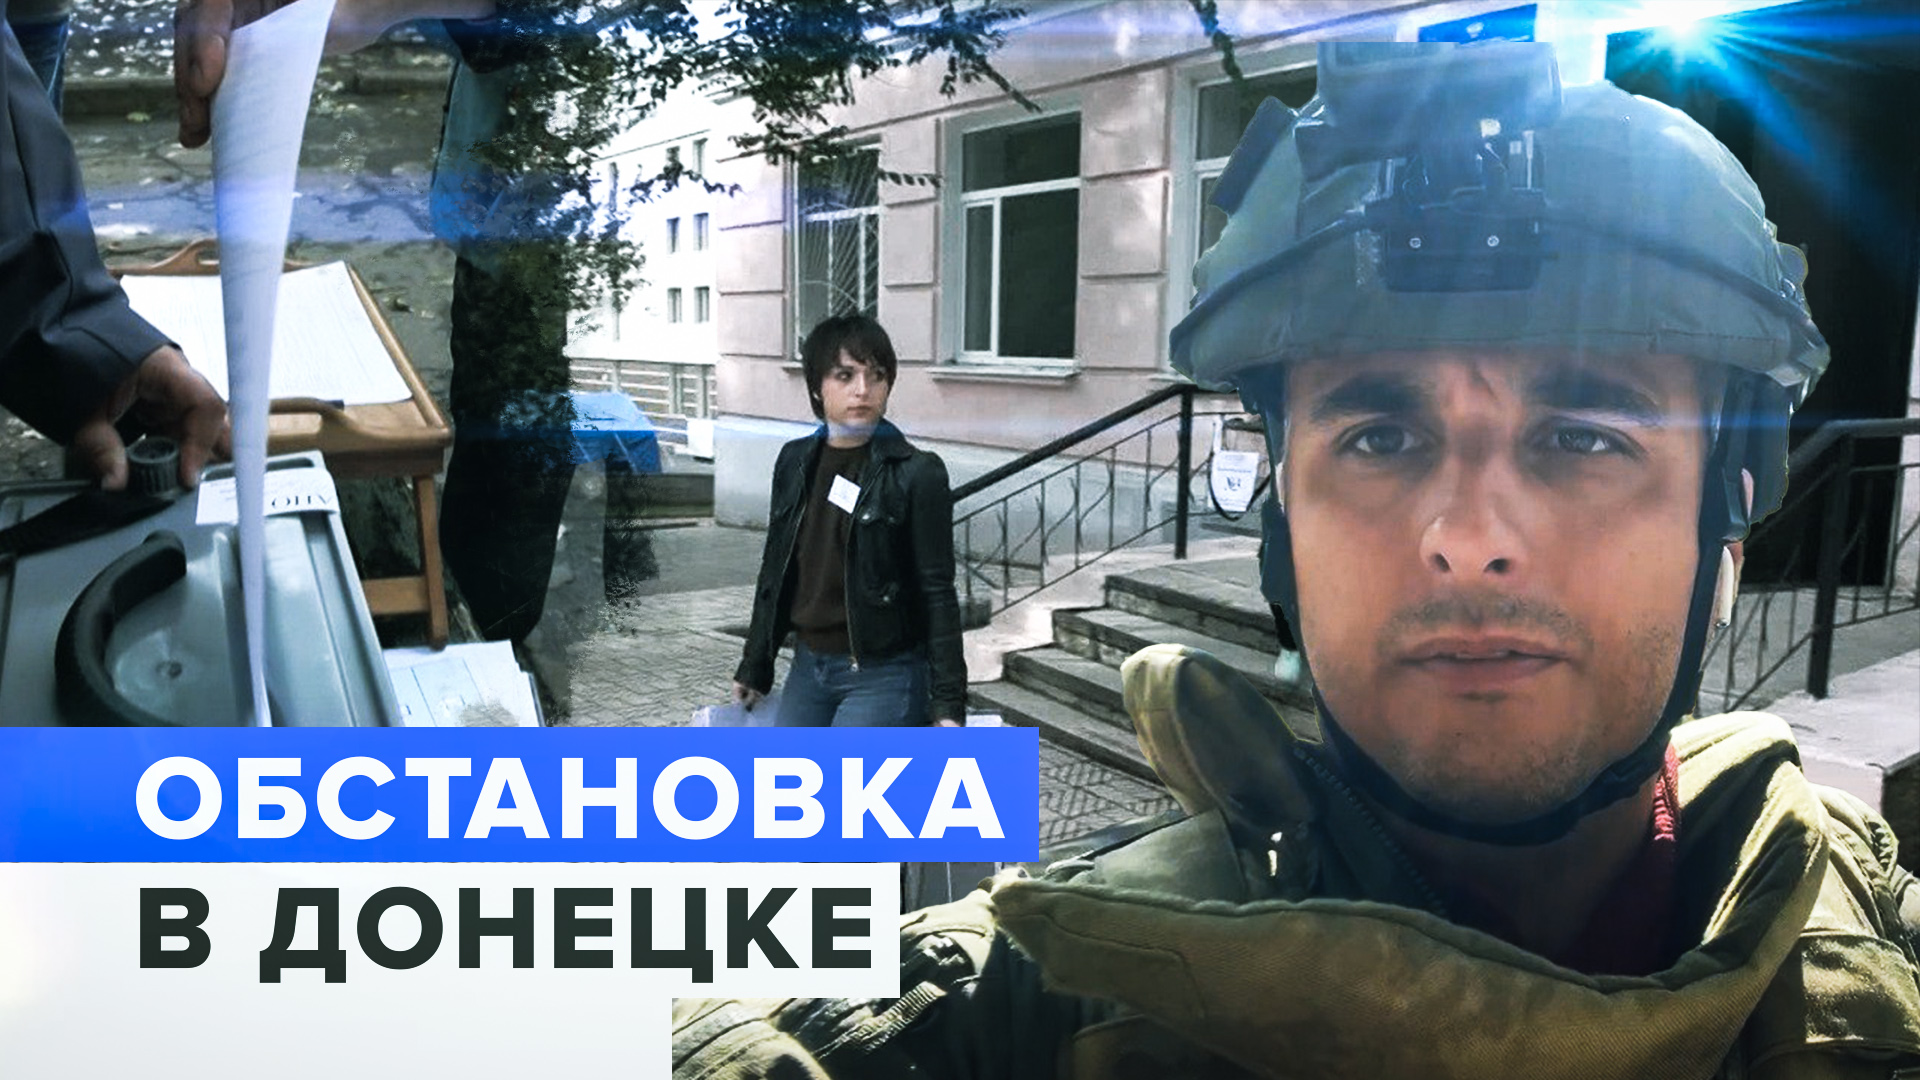 Как проходит голосование в условиях непрерывных обстрелов в Донецке